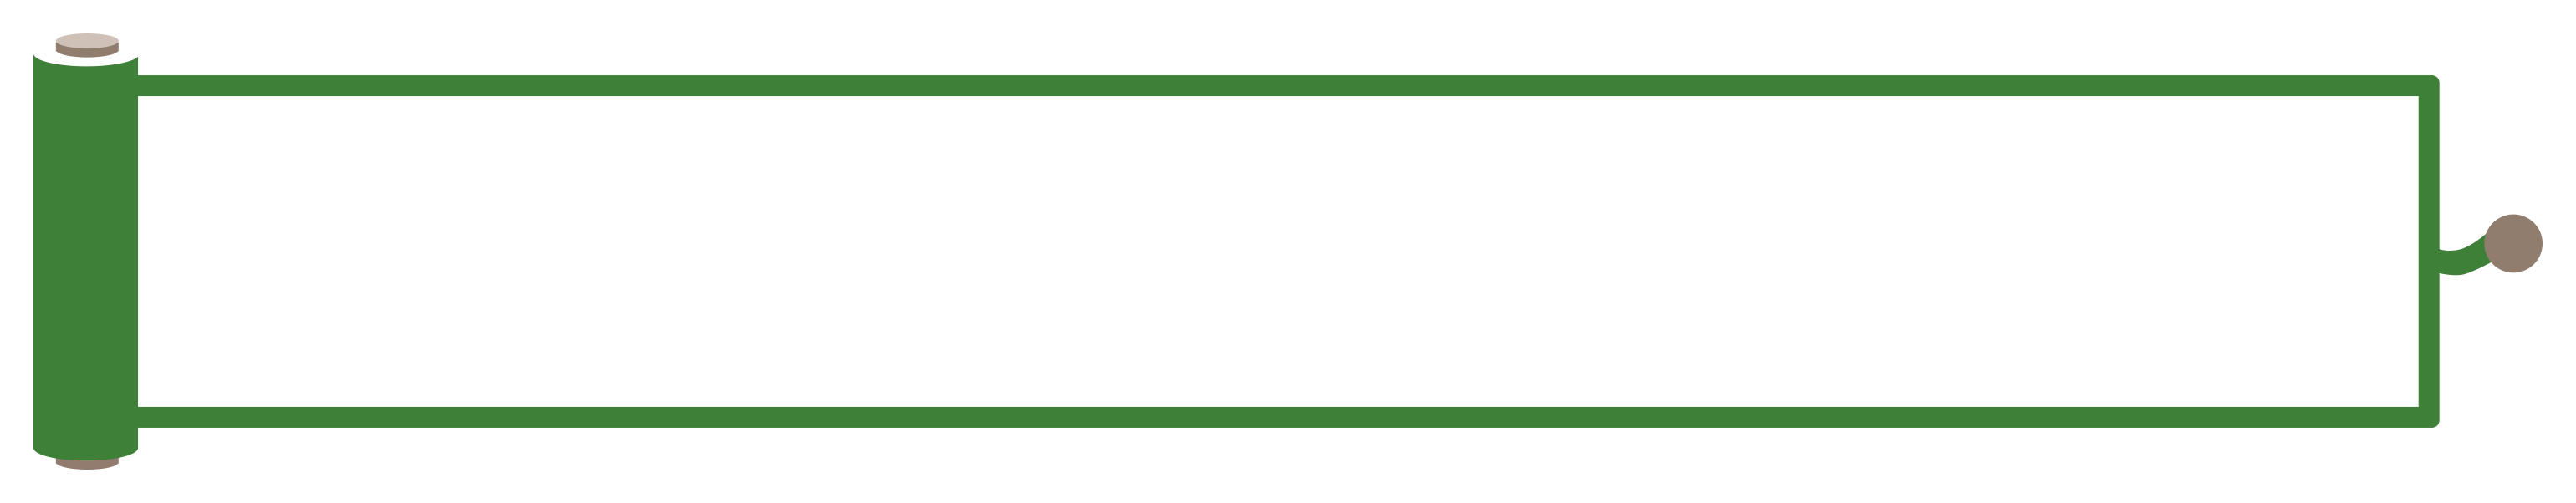 緑色の巻物風の縦長ボトムテロップのイラスト Onwaイラスト